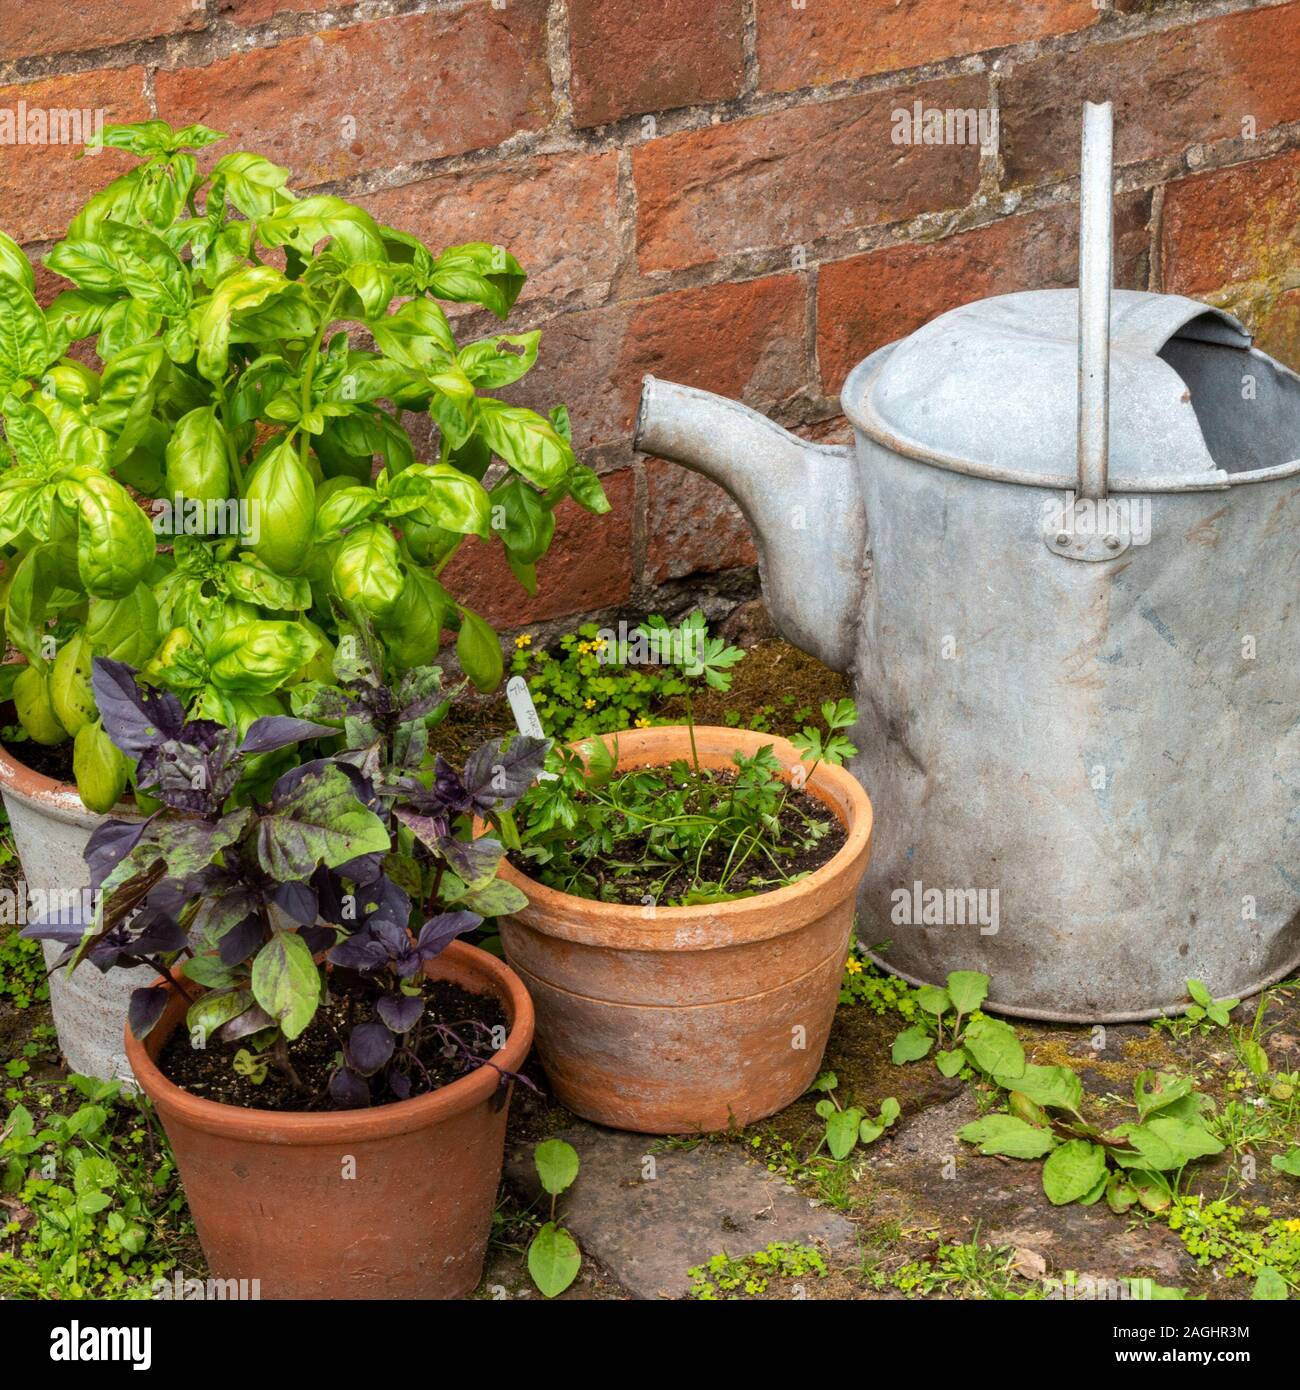 Anordnung eines alten Metall Gießkanne und Topfpflanzen garten Kraut Pflanzen von Red brick wall im Englischen Garten. Stockfoto